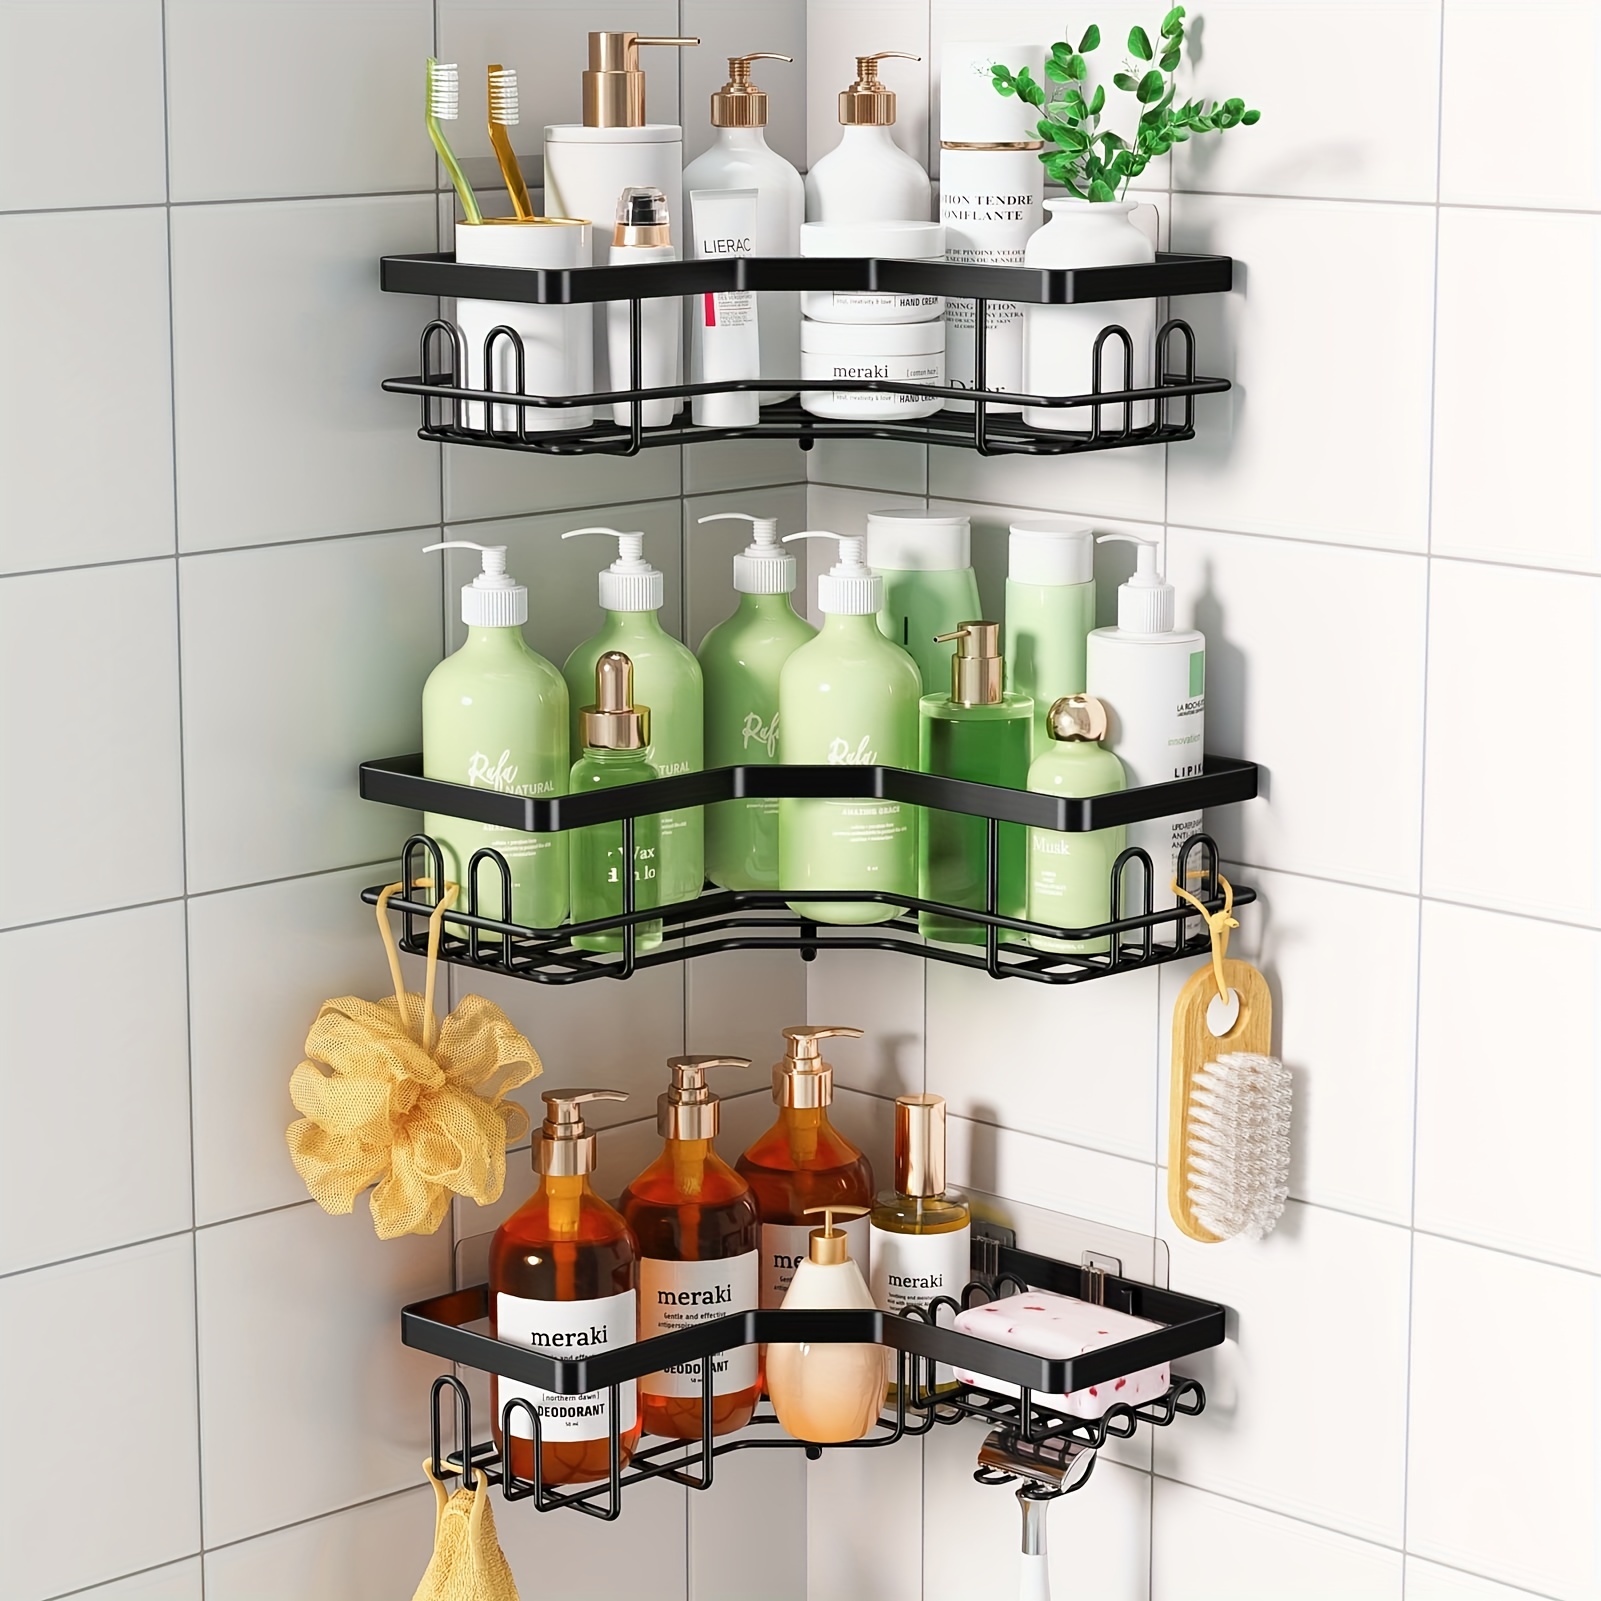 TAILI Organizador de ducha esquinero con ventosas resistentes, estante de  ducha, cesta de ducha montado en la pared, organizador de ducha para  champú